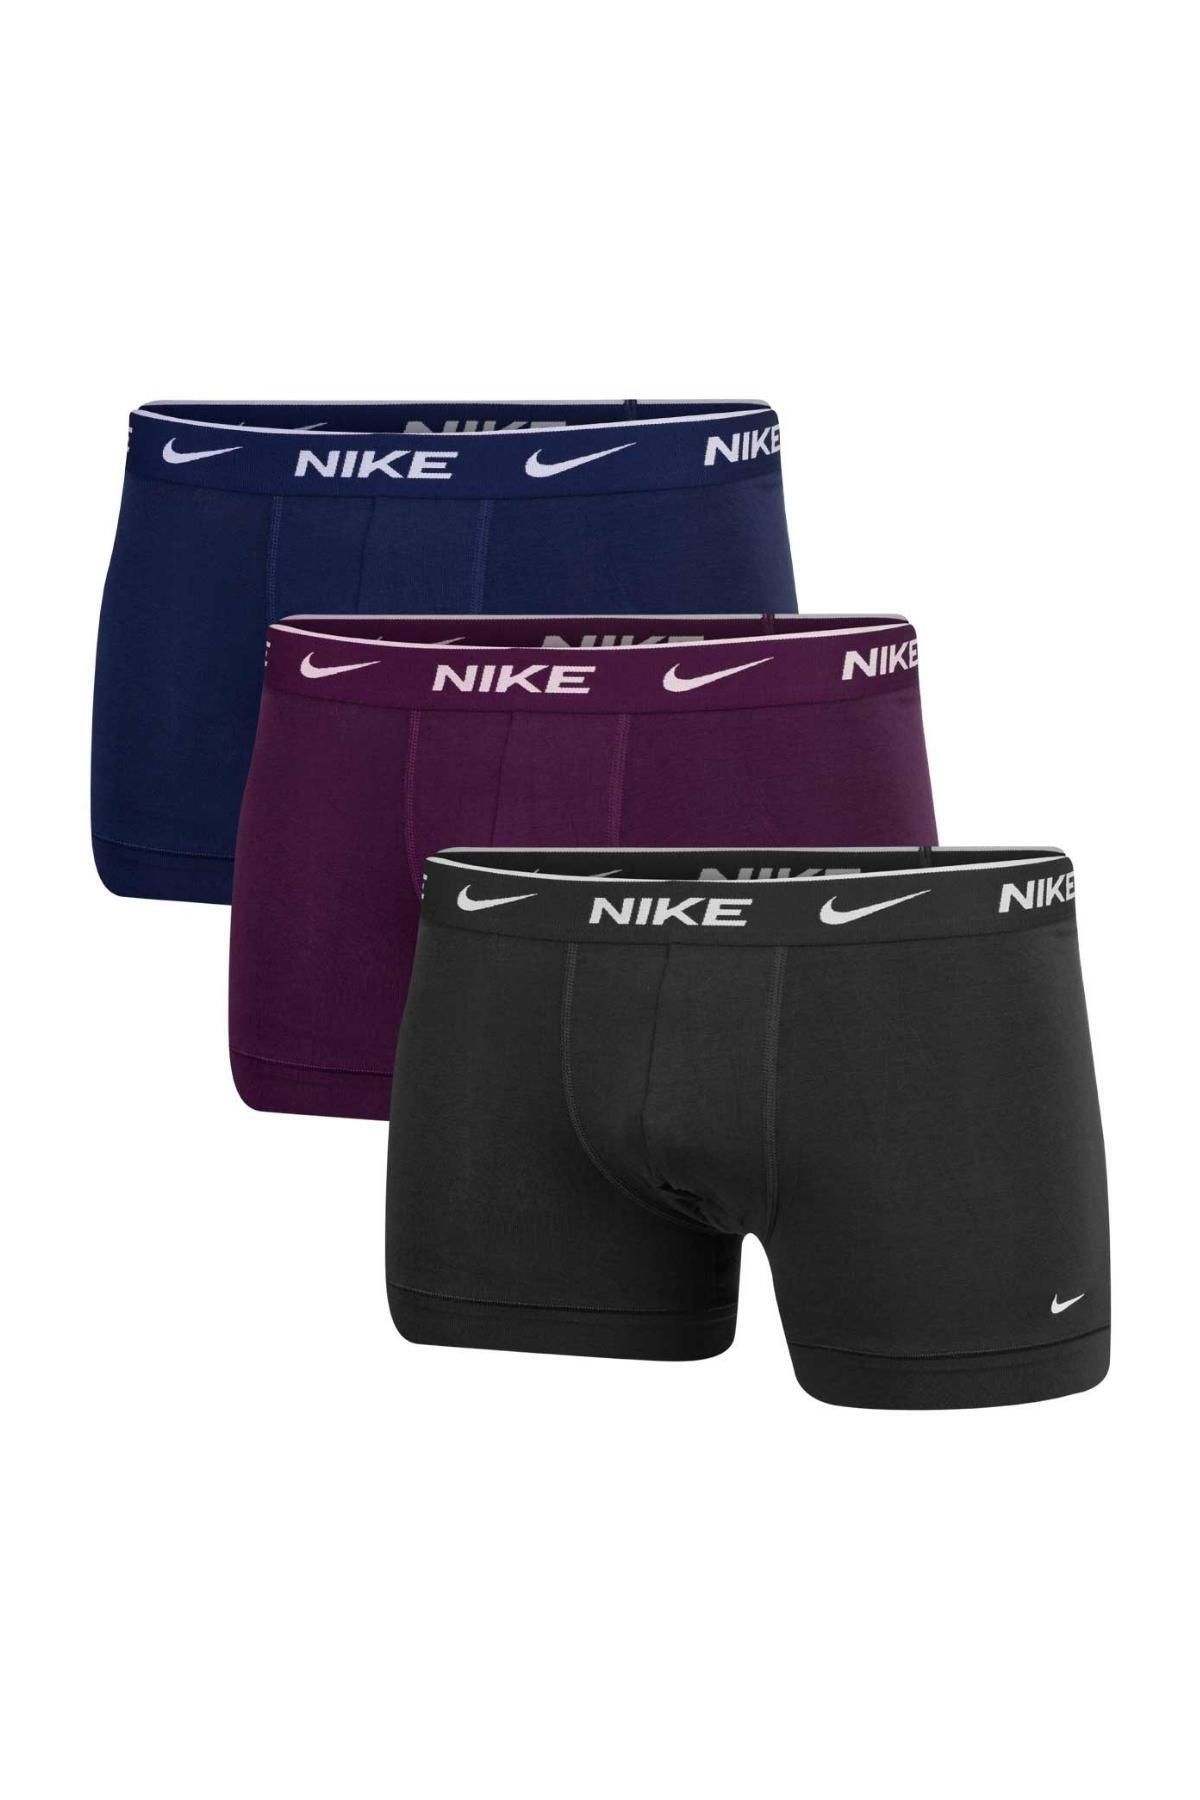 Nike Erkek Nike Marka Logolu Elastik Bantlı Günlük Kullanıma Uygun Lacivert-bordo-gri Boxer 0000ke1008-kb